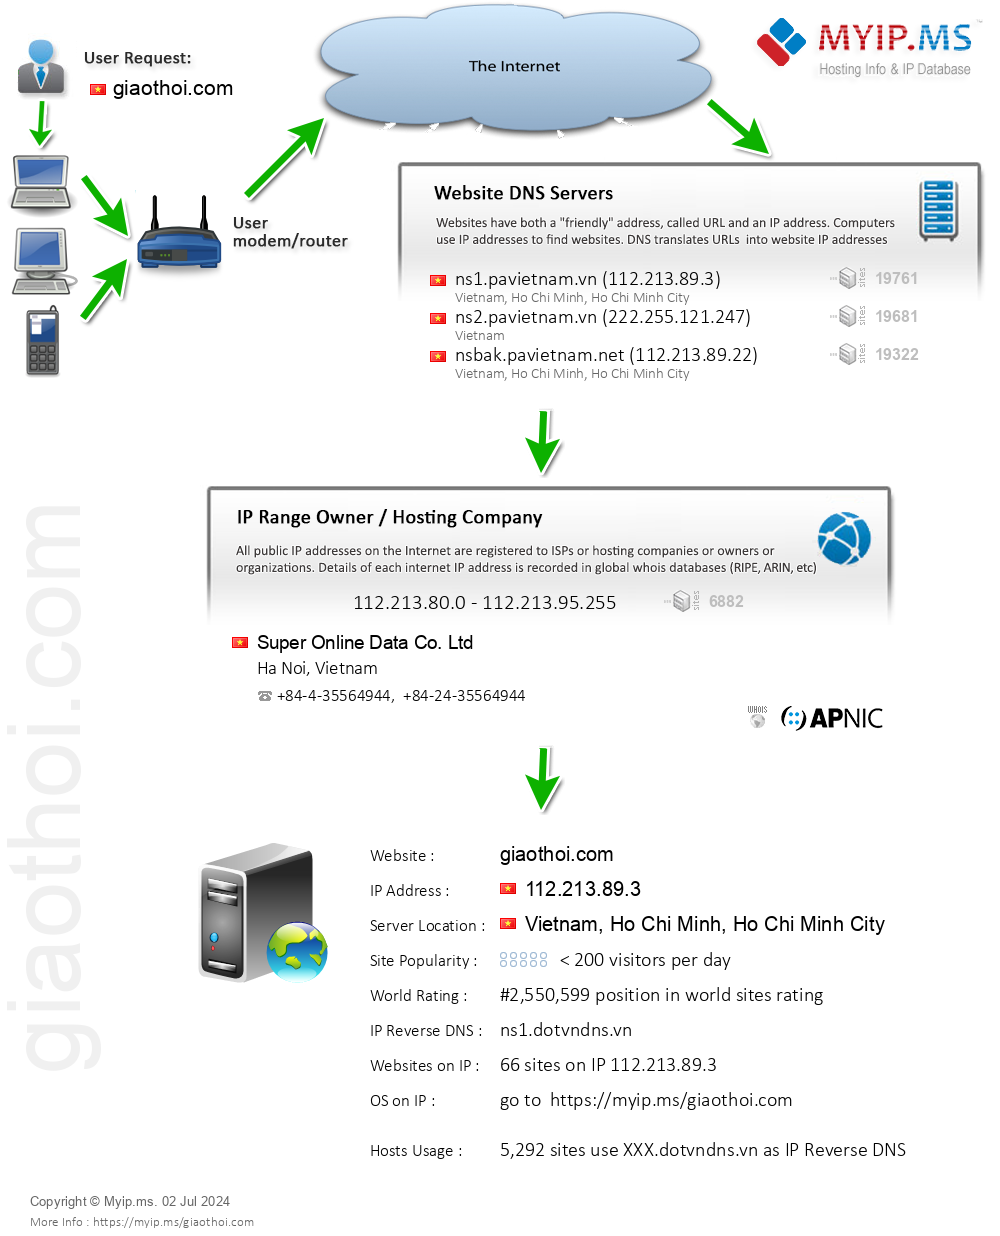 Giaothoi.com - Website Hosting Visual IP Diagram